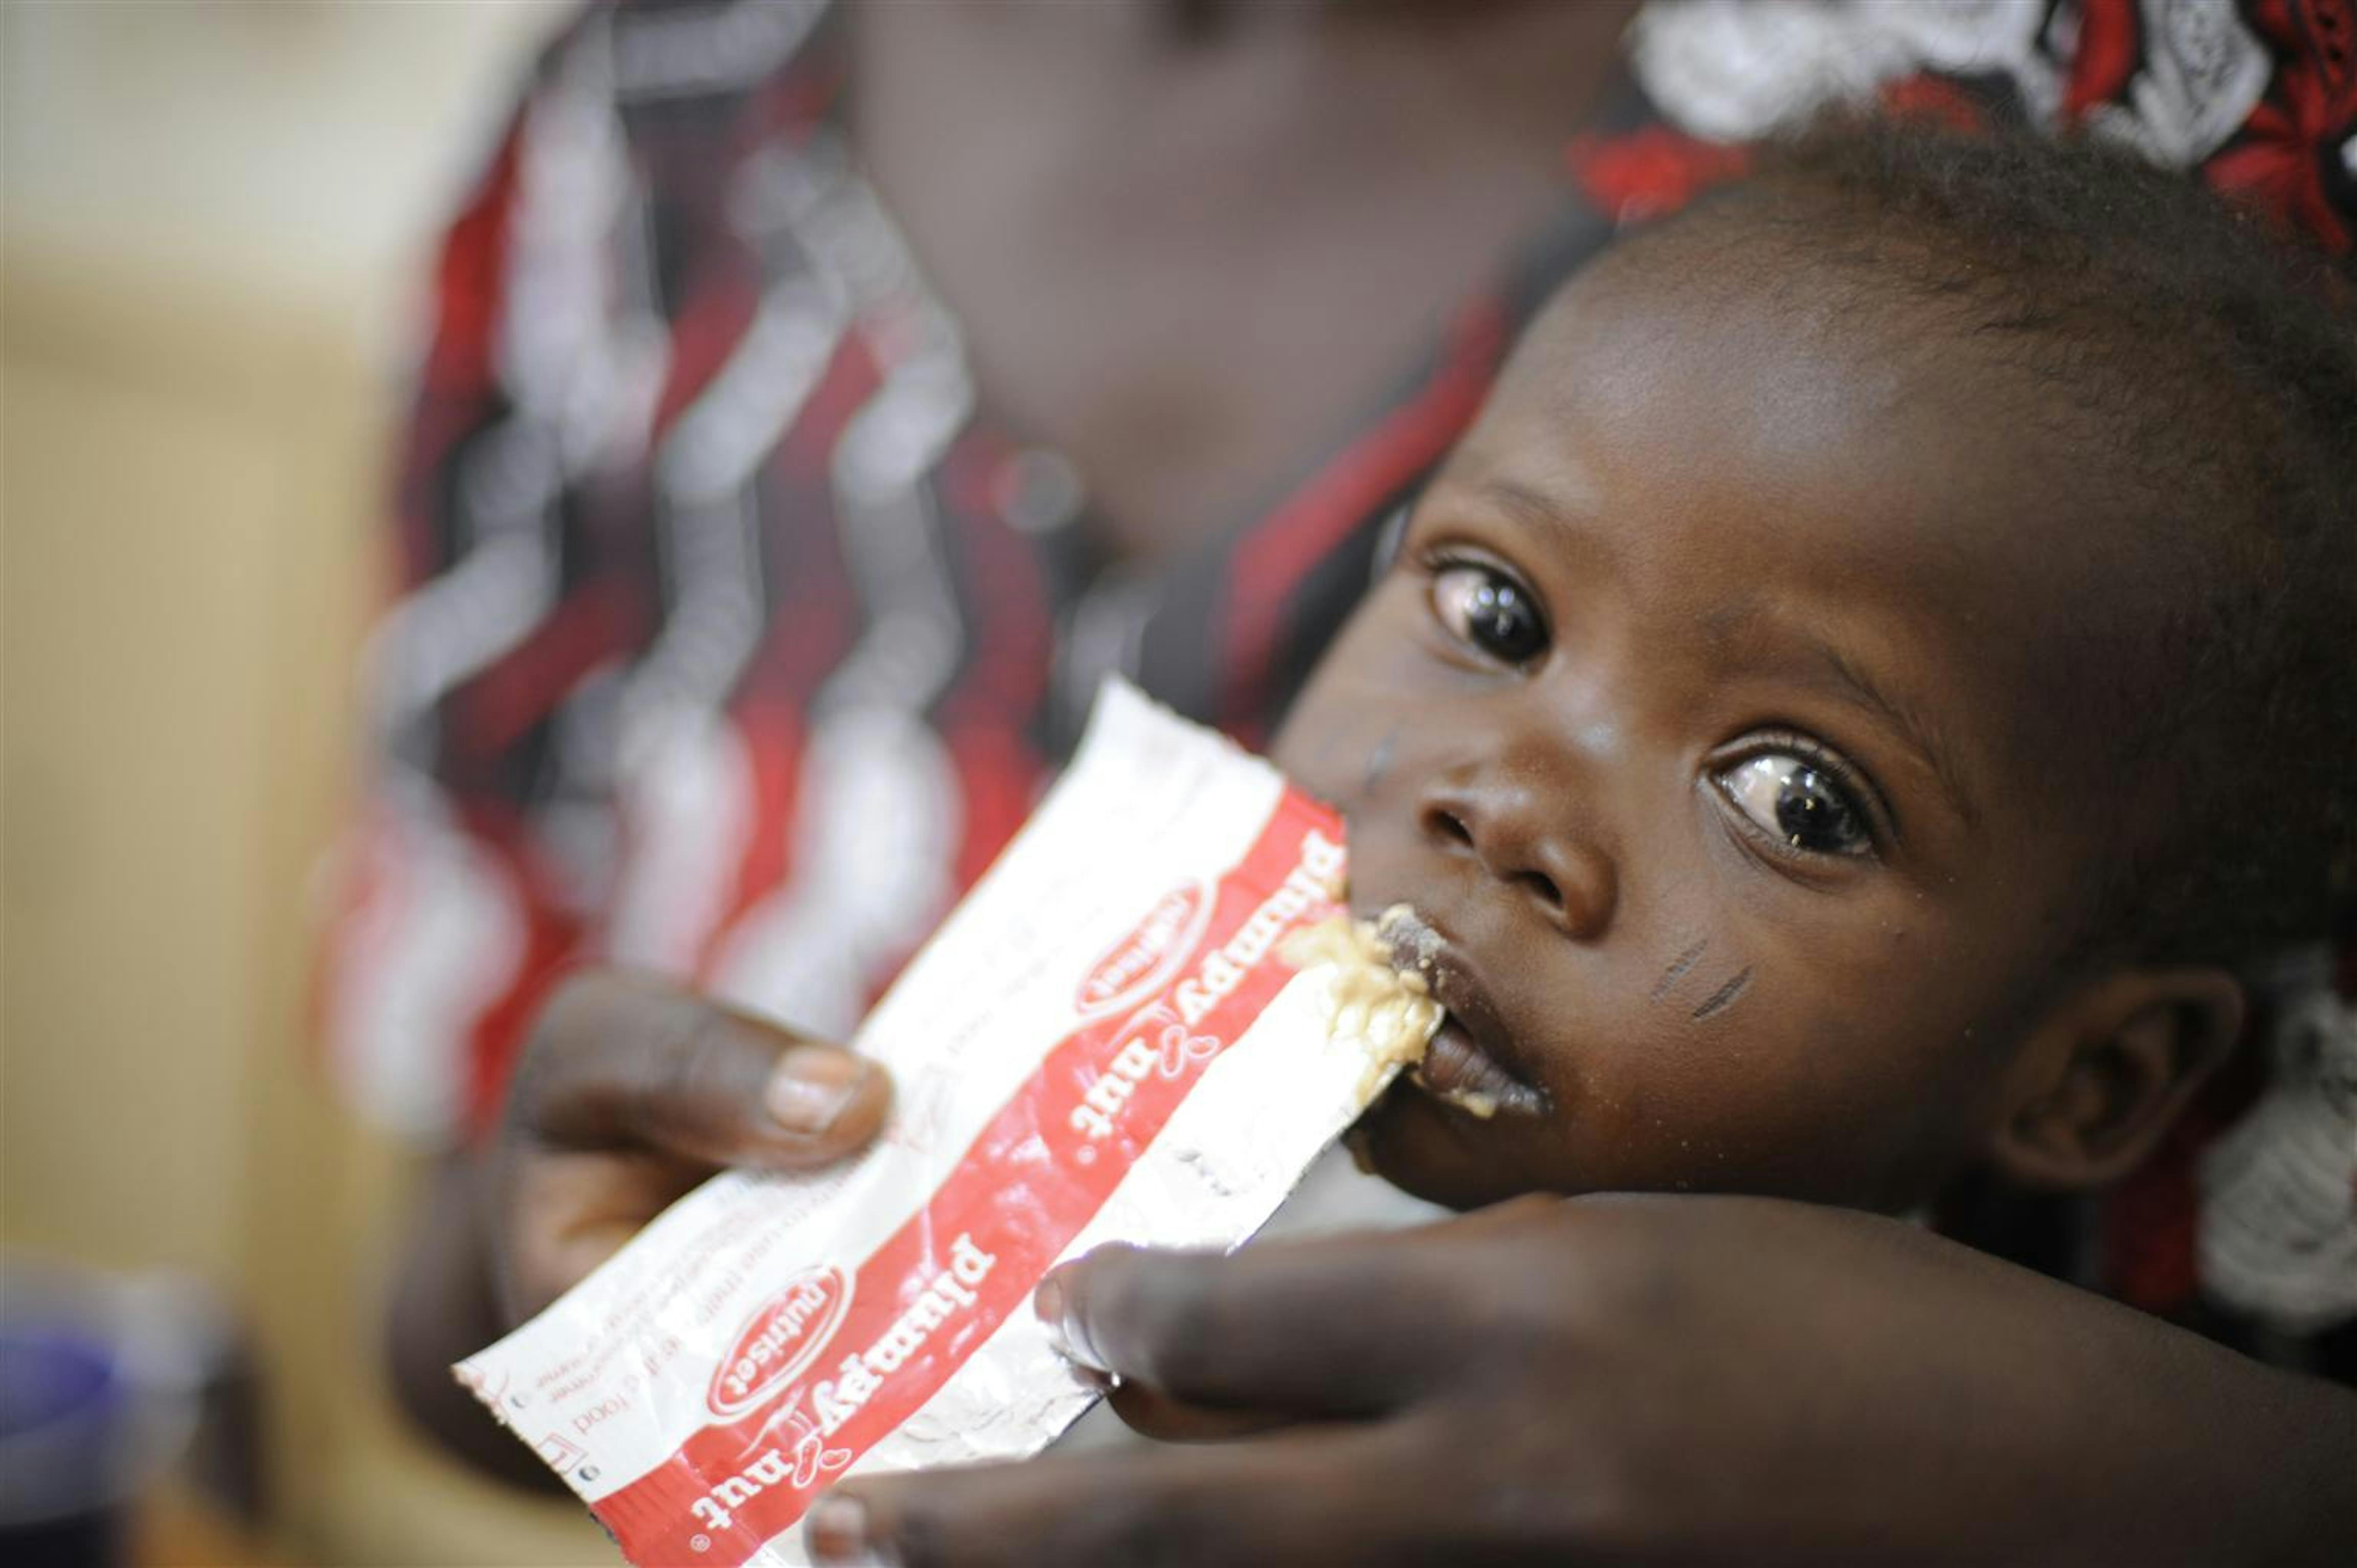 Un bambino ormai in fase di recupero da uno stadio di malnutrizione acuta nel centro nutrizionale terapeutico Chagoua a N'Djamena, capitale del Ciad - ©UNICEF/NYHQ2010-1159/R.Gangale 